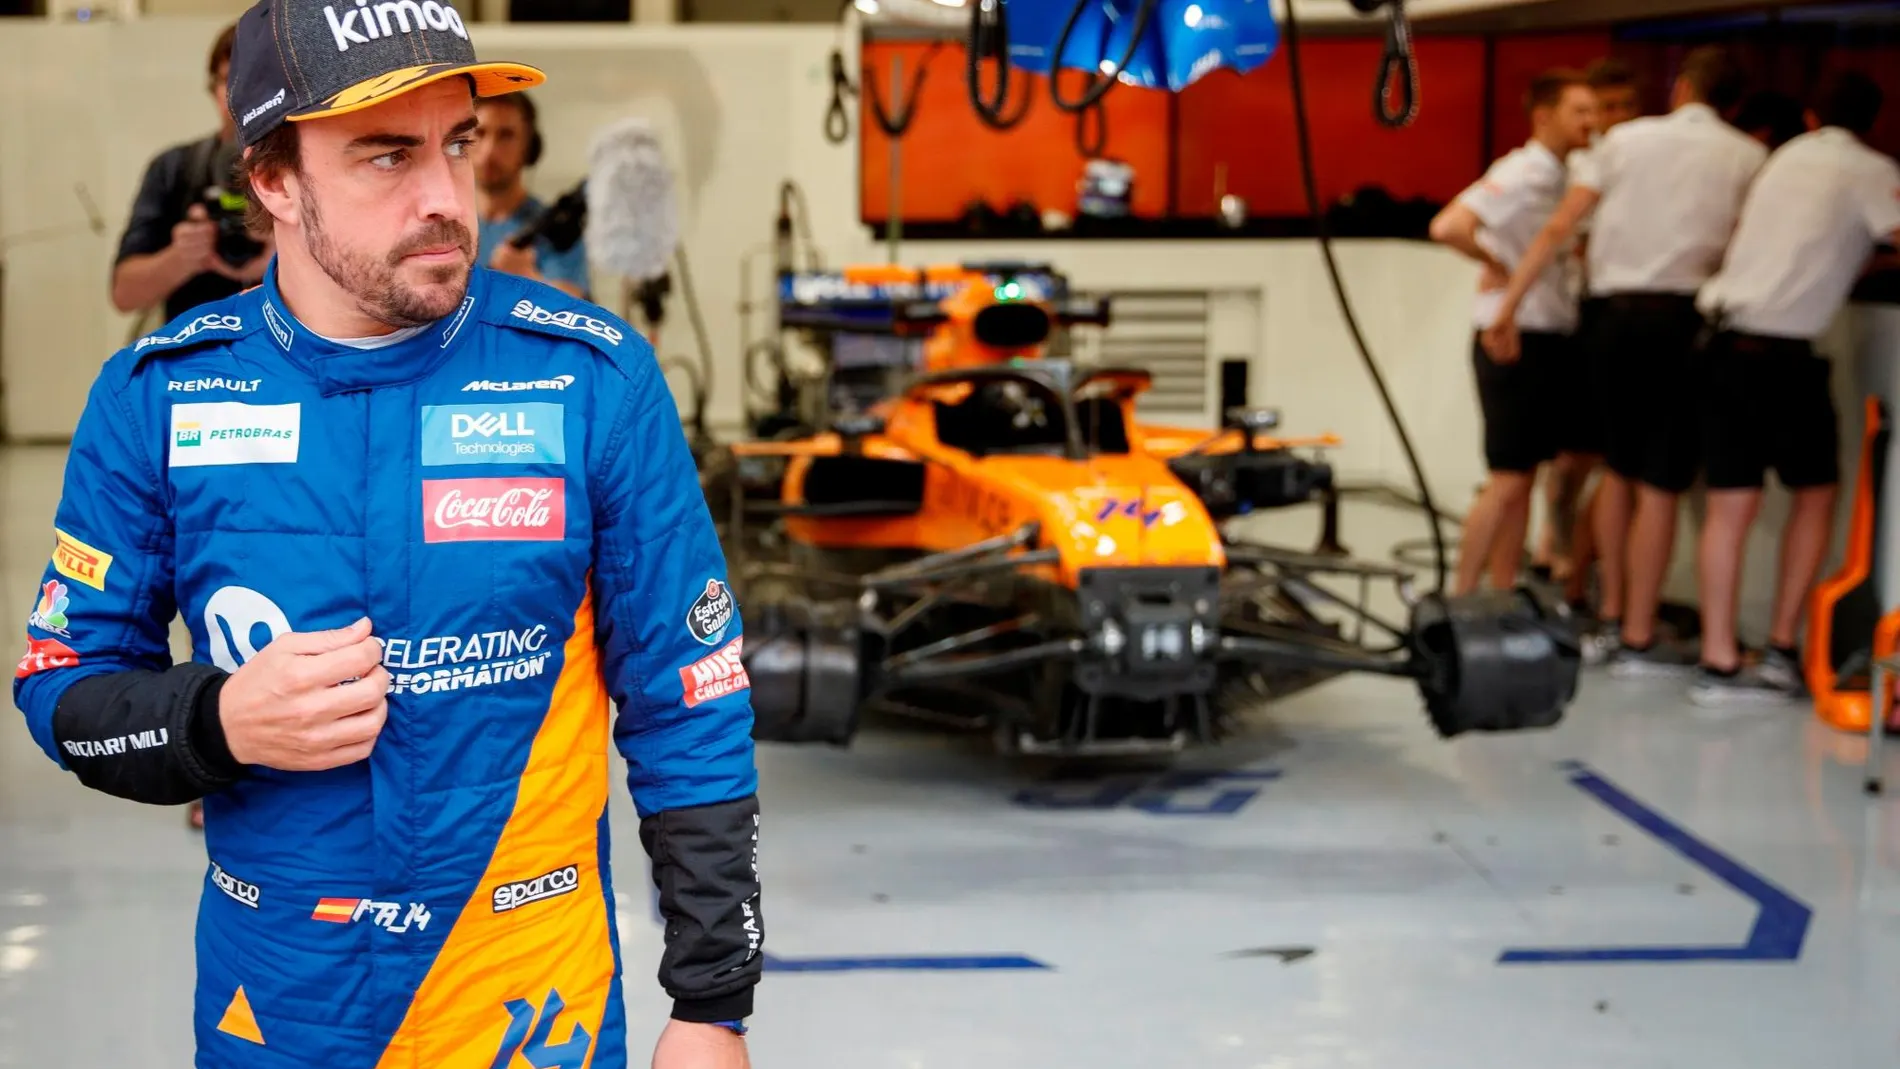 El español Fernando Alonso, doble campeón mundial de Fórmula Uno y ganador de las 24 horas de Le Mans